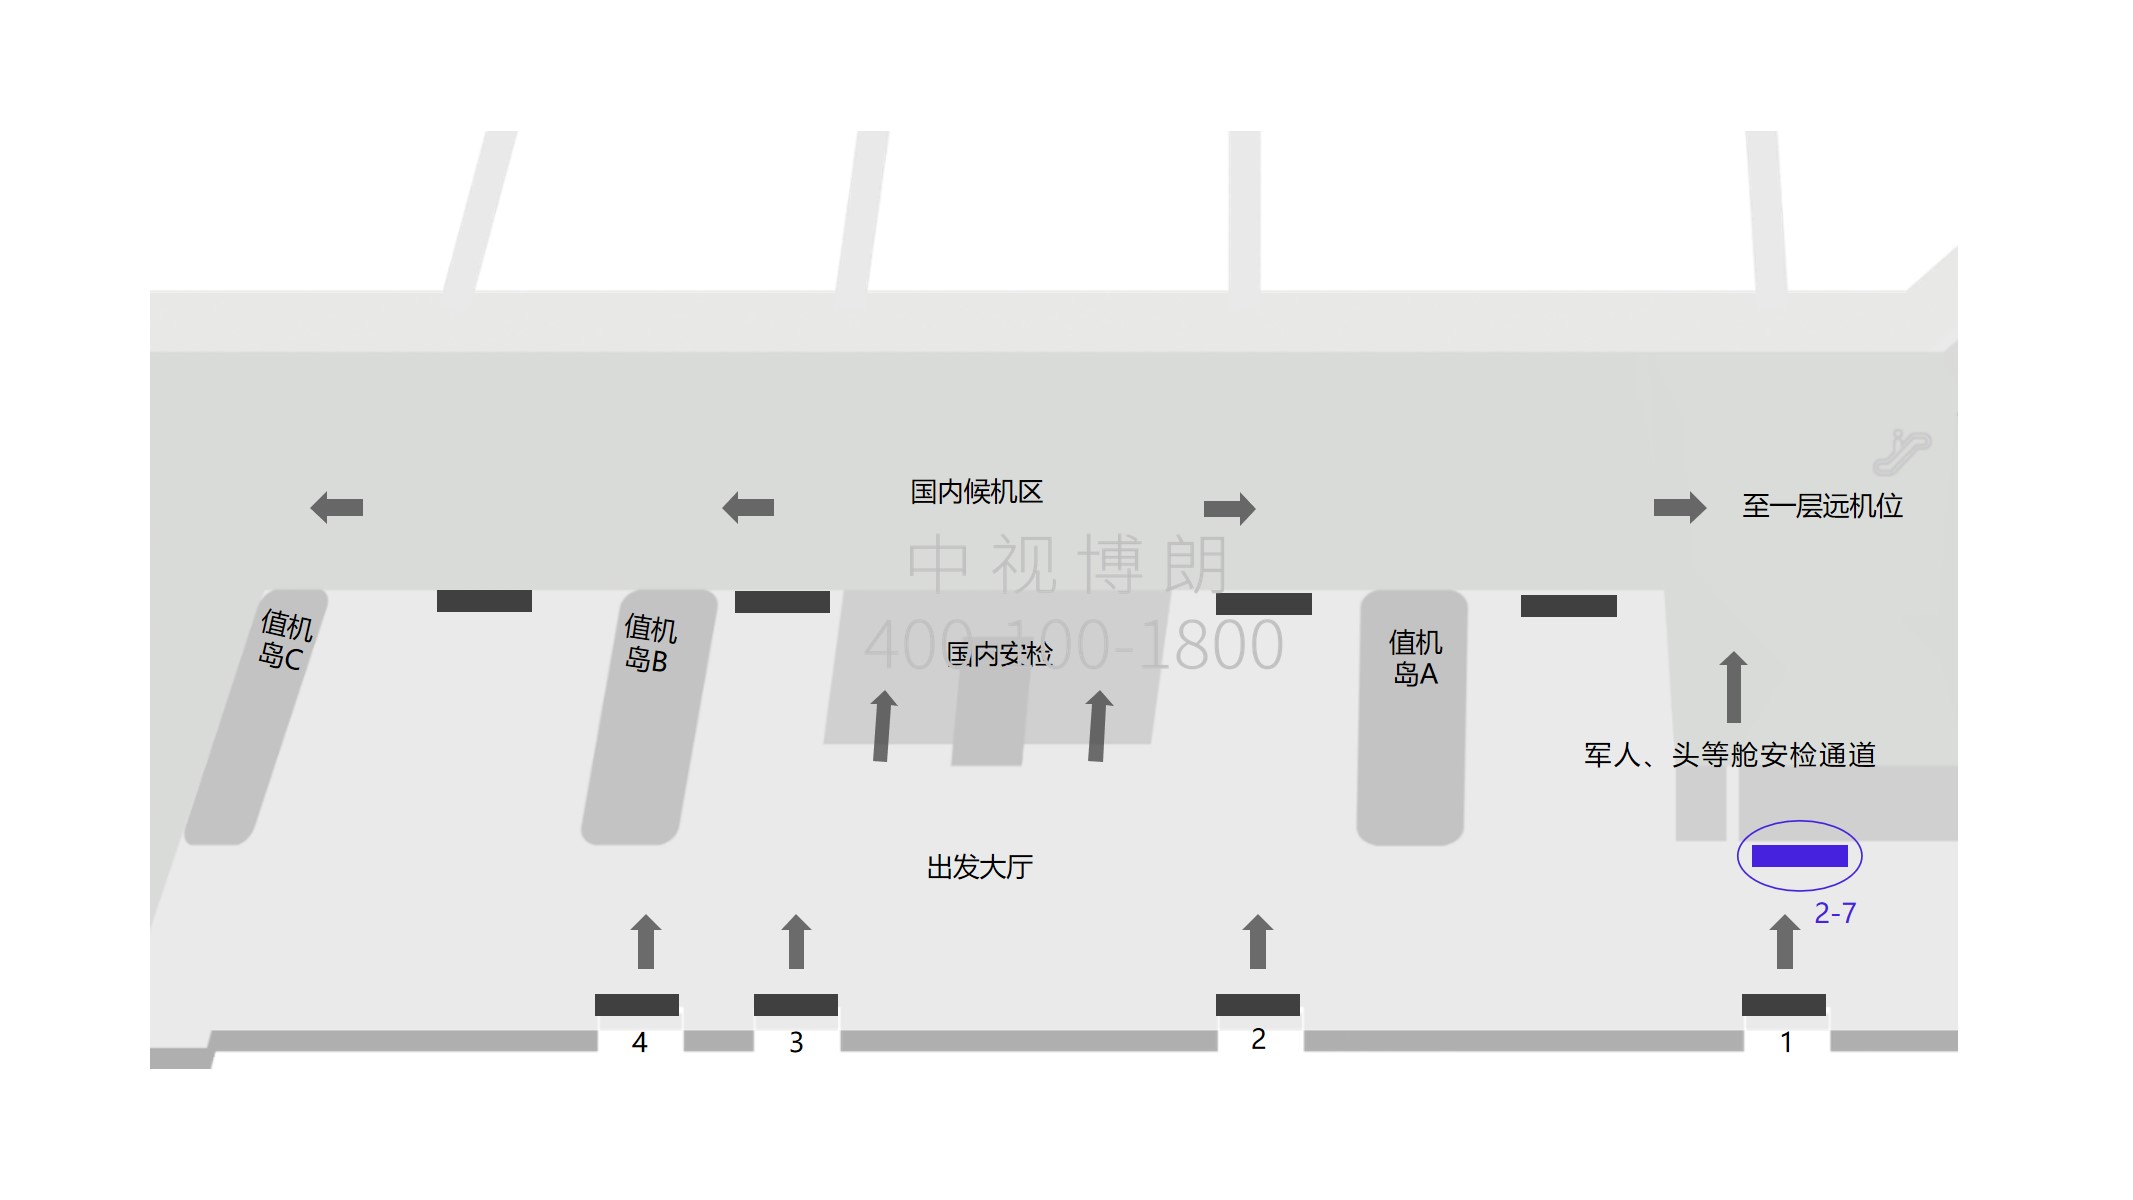 三亚机场广告-2-7出发大厅安检口外灯箱点位图